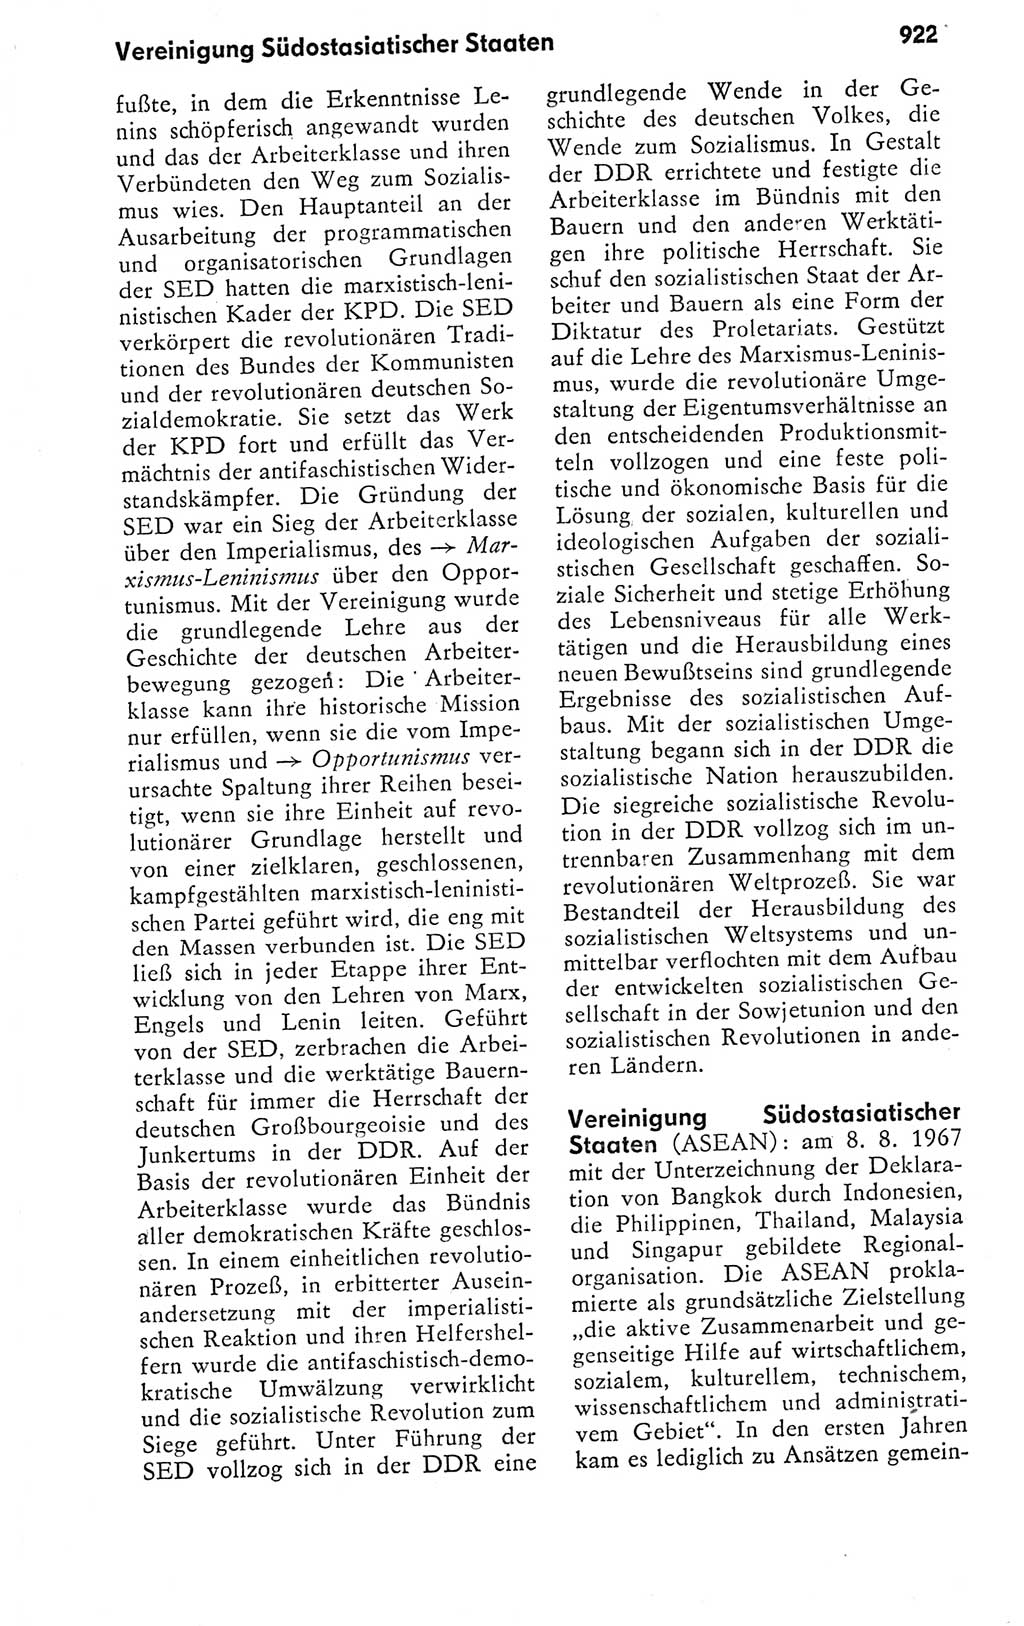 Kleines politisches Wörterbuch [Deutsche Demokratische Republik (DDR)] 1978, Seite 922 (Kl. pol. Wb. DDR 1978, S. 922)